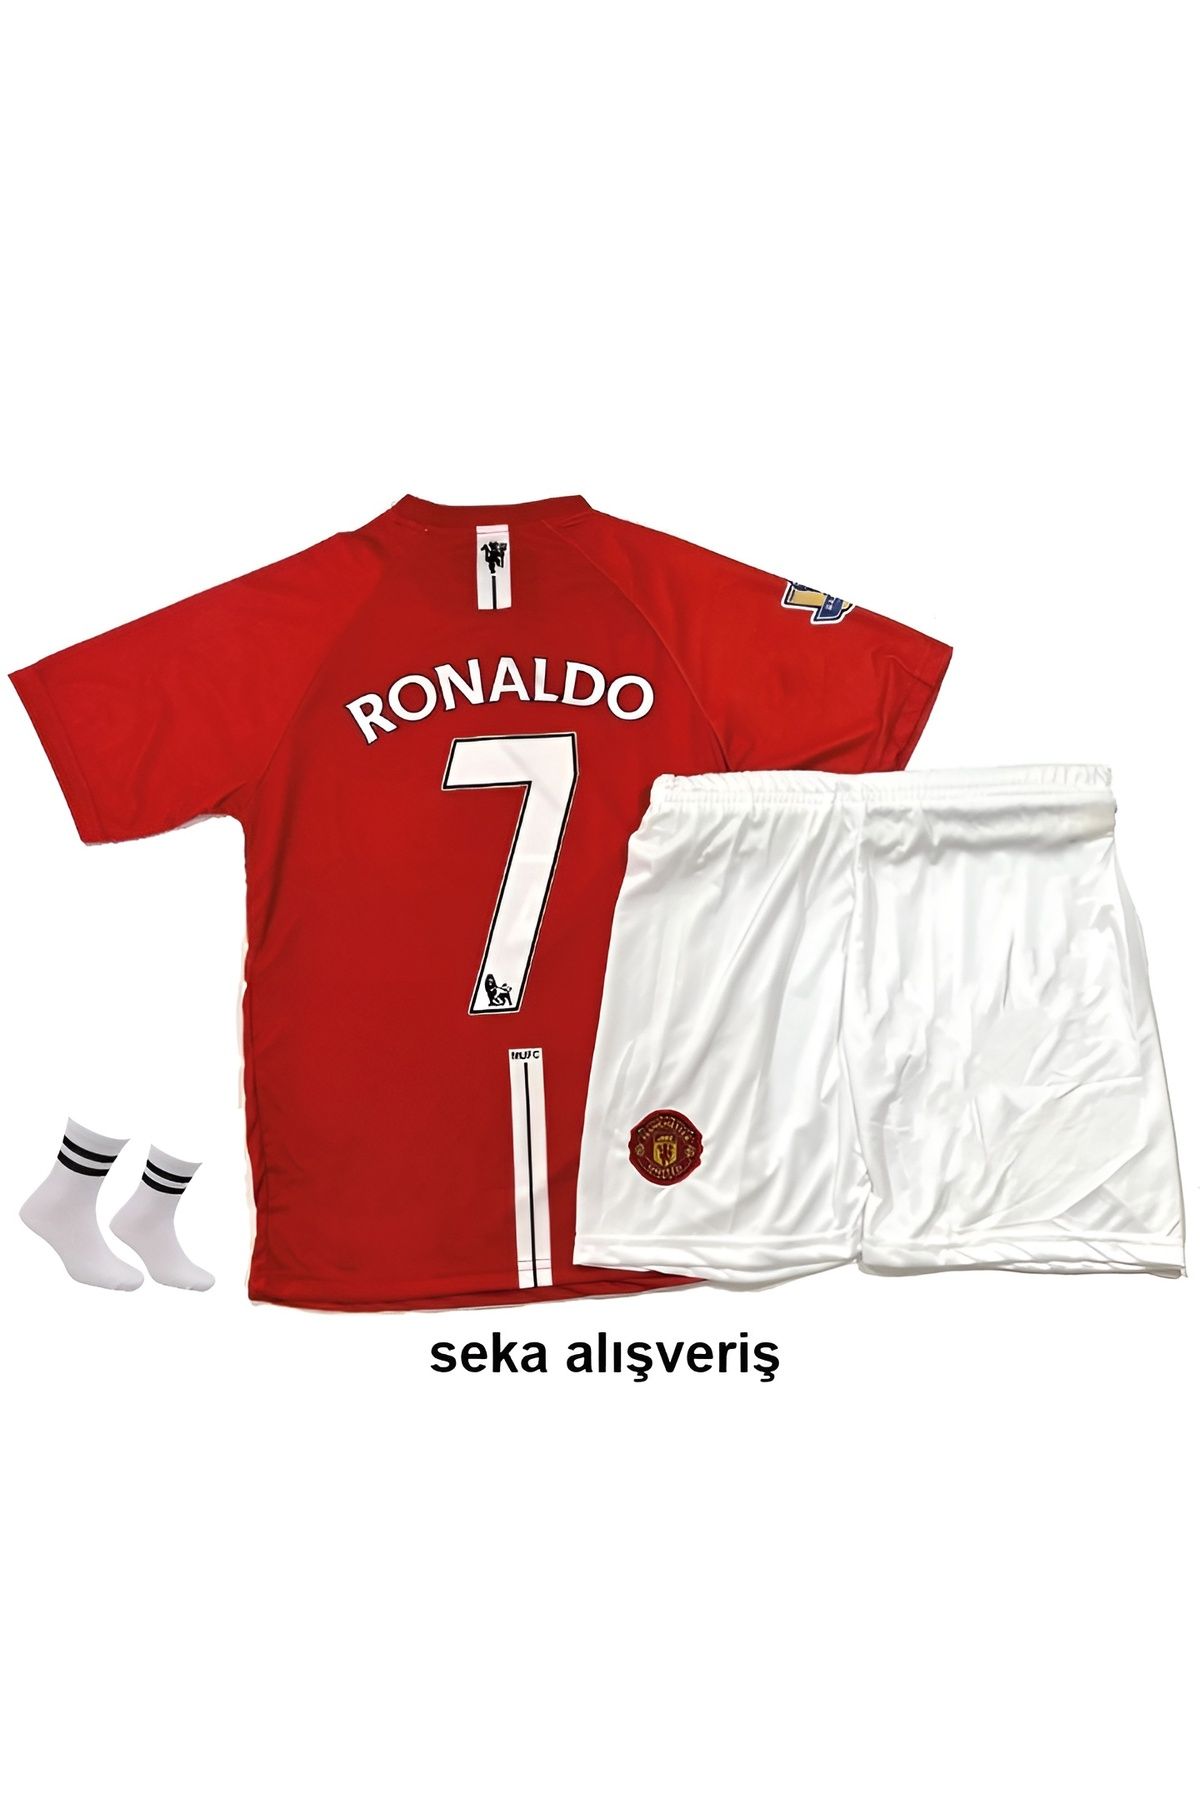 Seka Alışveriş Ronaldo Retro Kırmızı 7 Manchester United Şampiyonlar Ligi 2008 Moscow Finali 3'lü Çoçuk Forma Seti